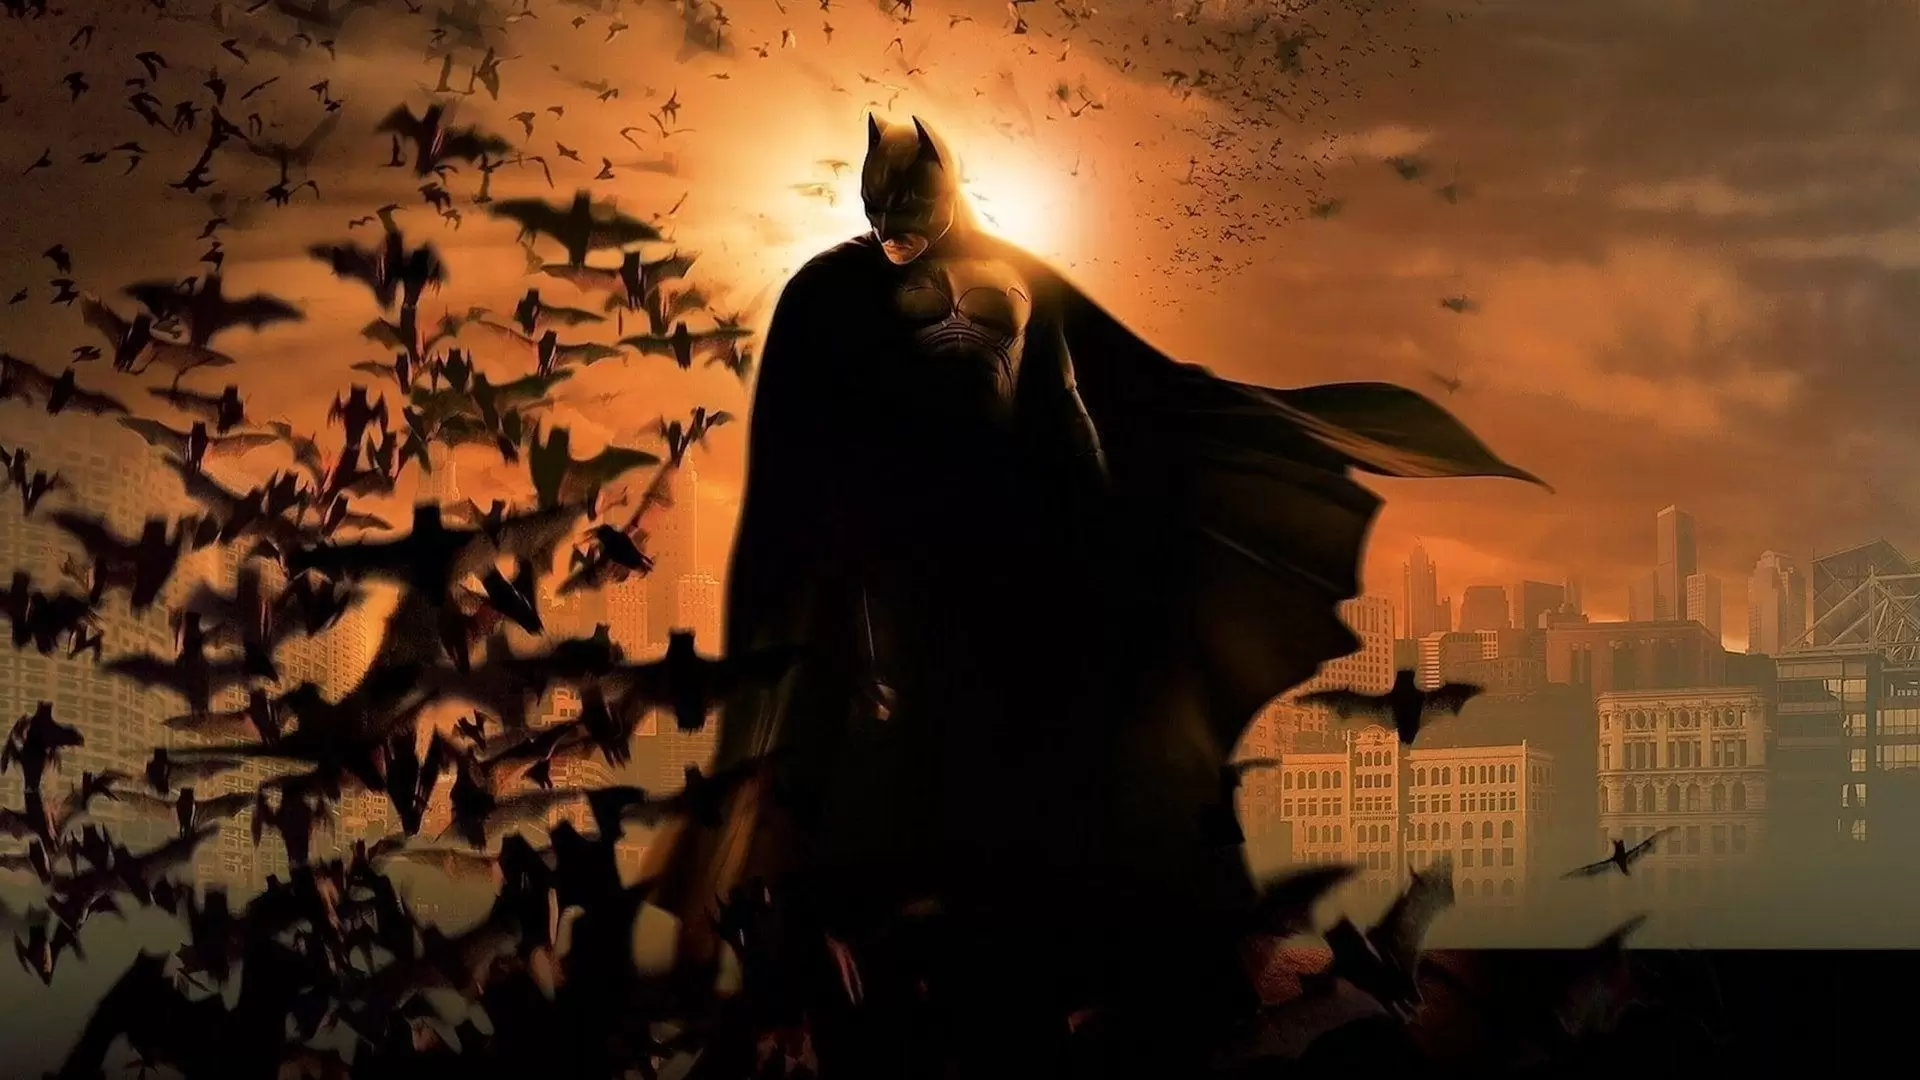 دانلود فیلم Batman Begins 2005 (مرد خفاشی ۱: مرد خفاشی آغاز می کند) با زیرنویس فارسی و تماشای آنلاین